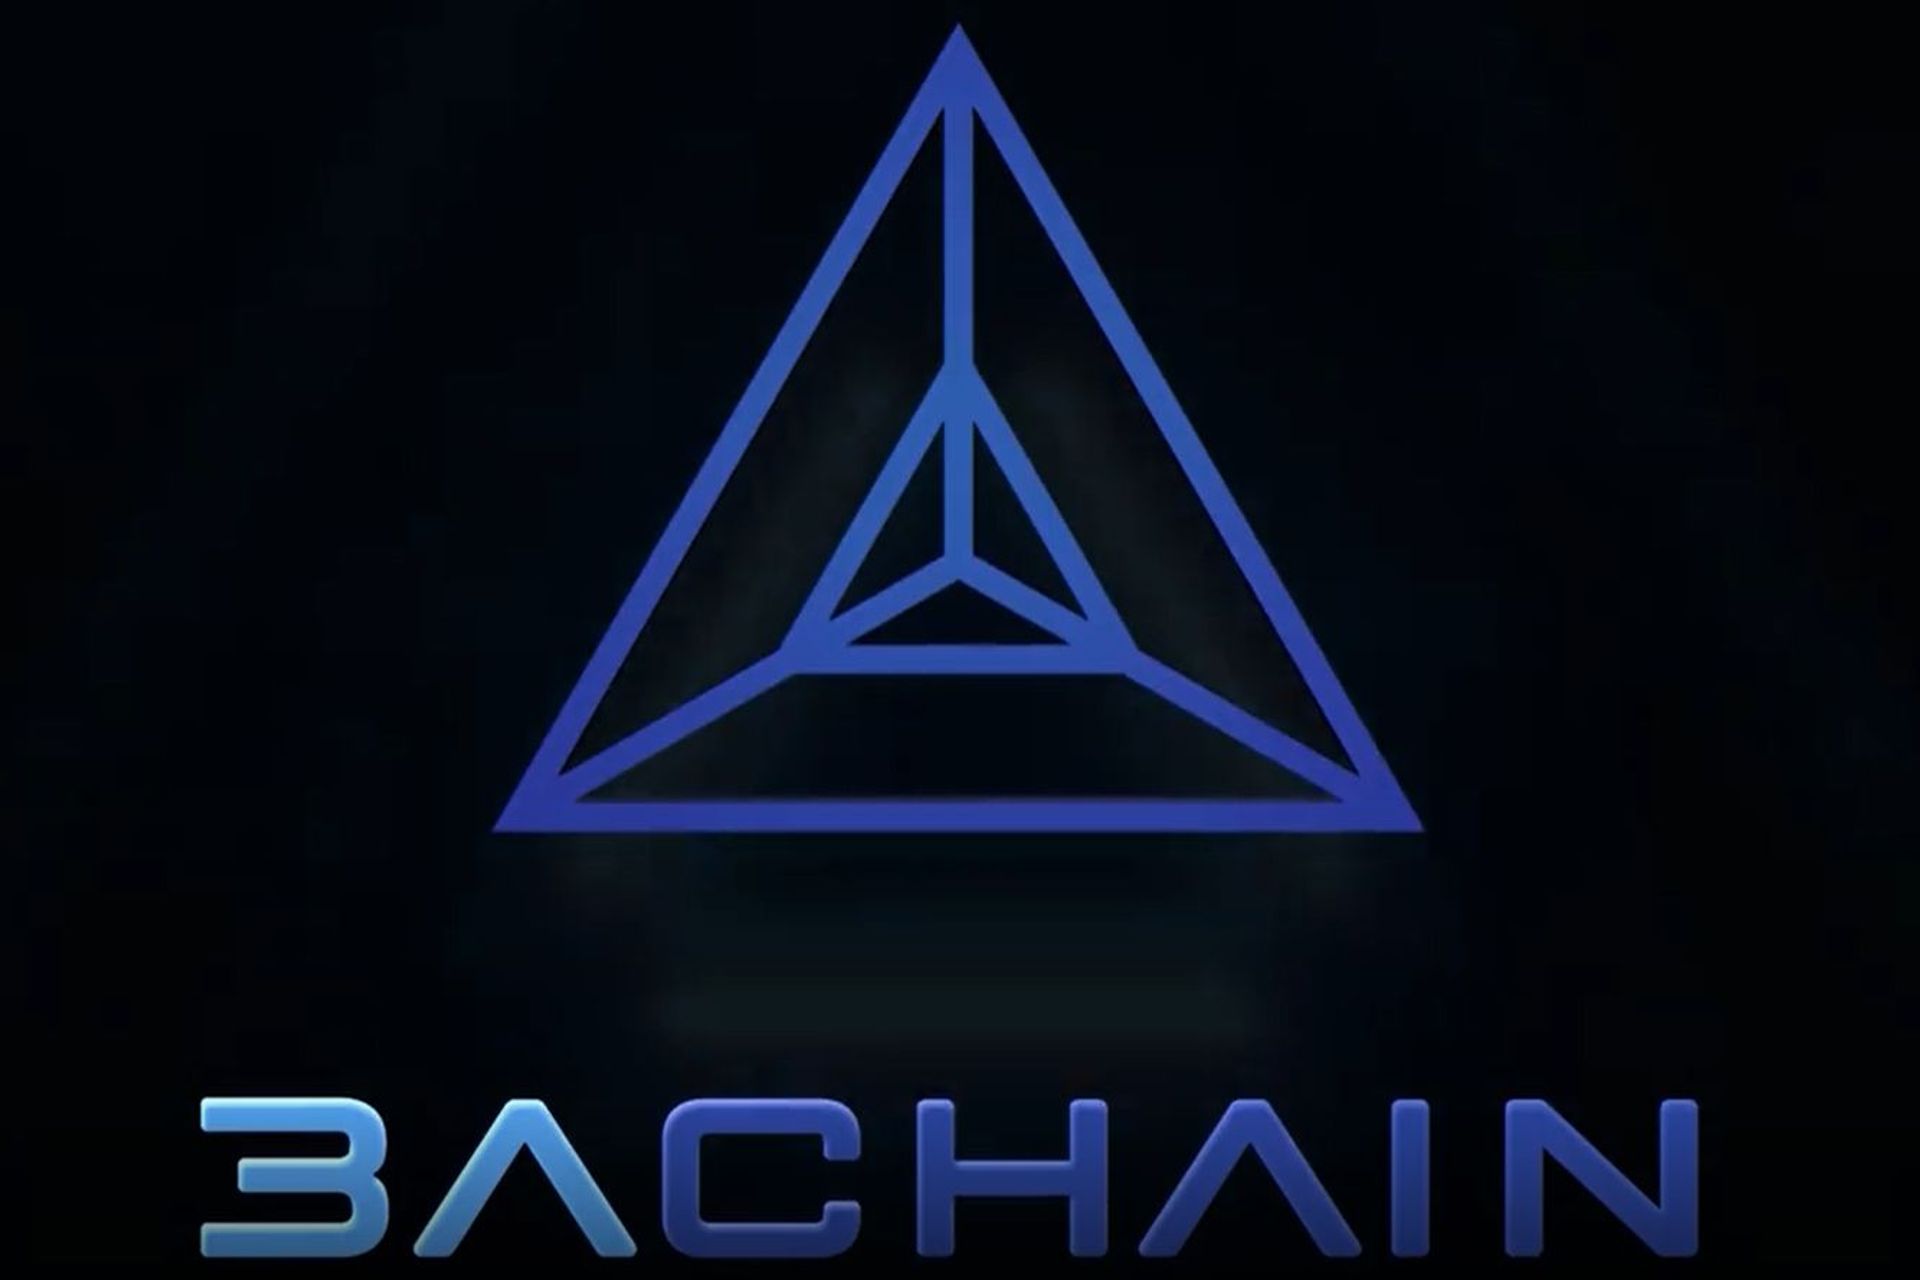 Logotypen för A3chain-blockkedjan lanserad av staden Lugano